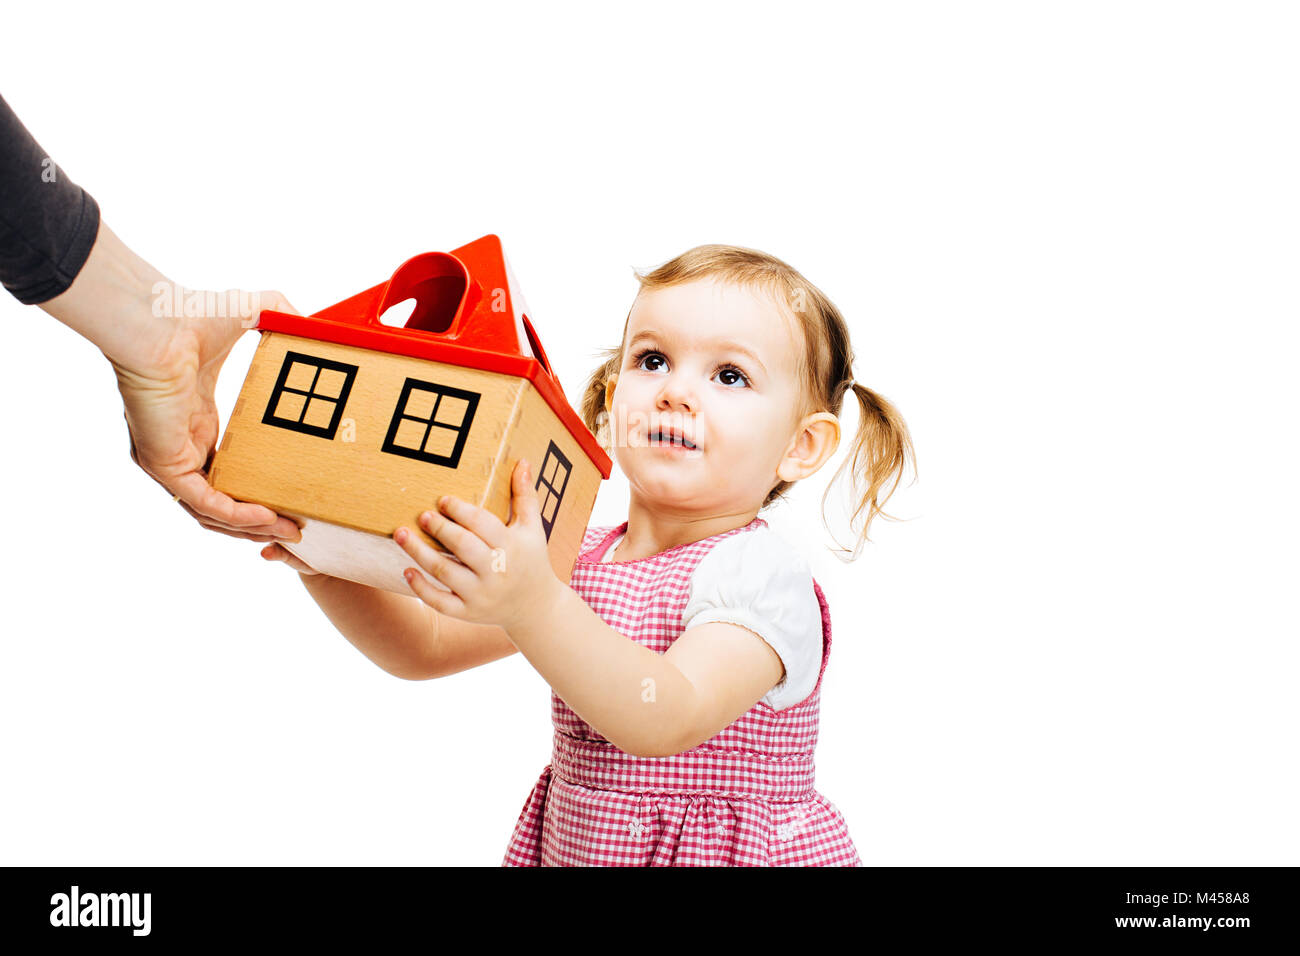 toddler girl receiving a house Stock Photo